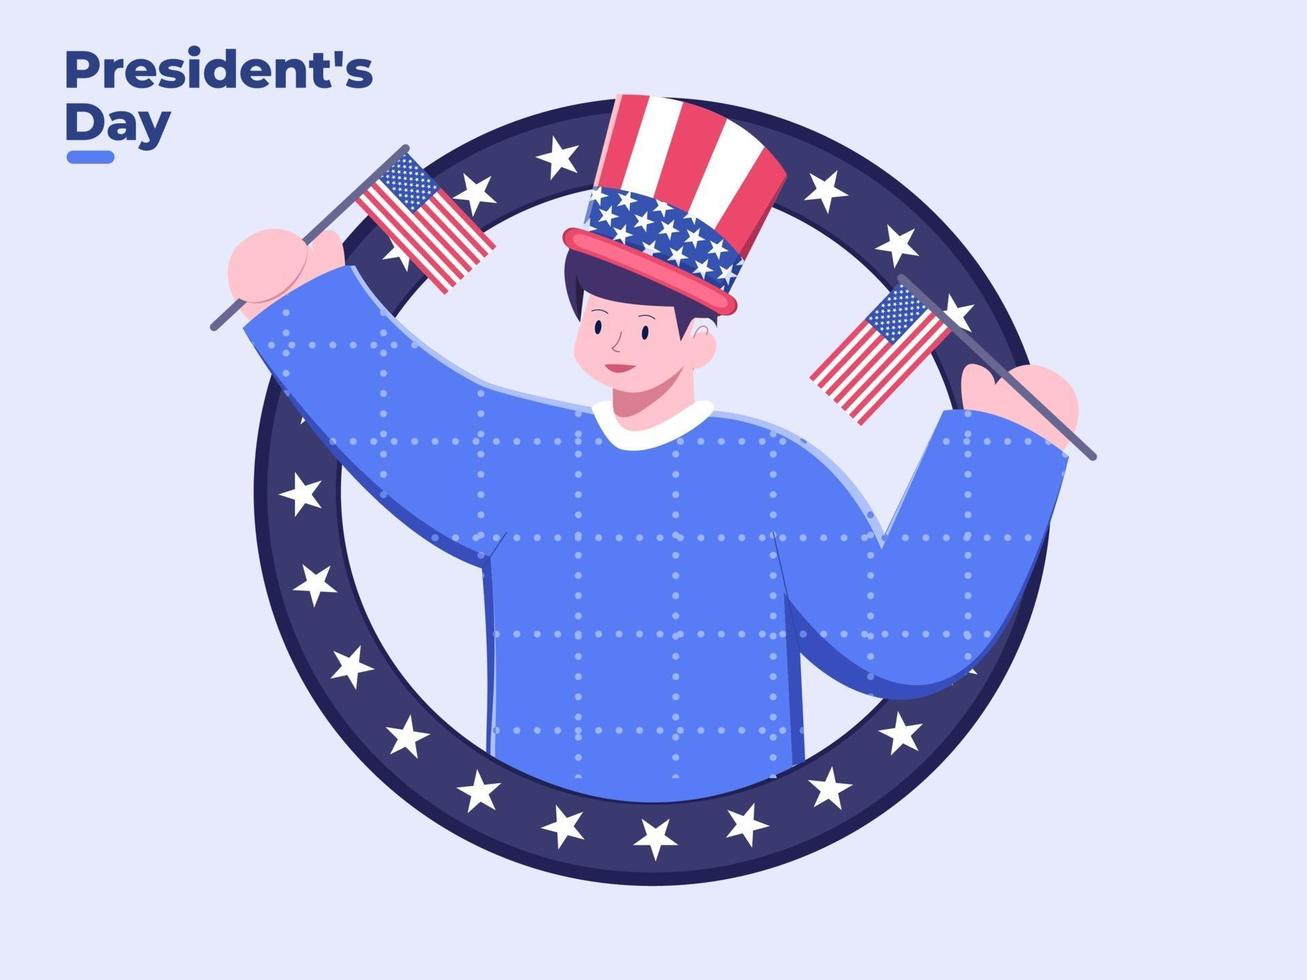 ilustração plana pessoa comemorando o dia do presidente vetor